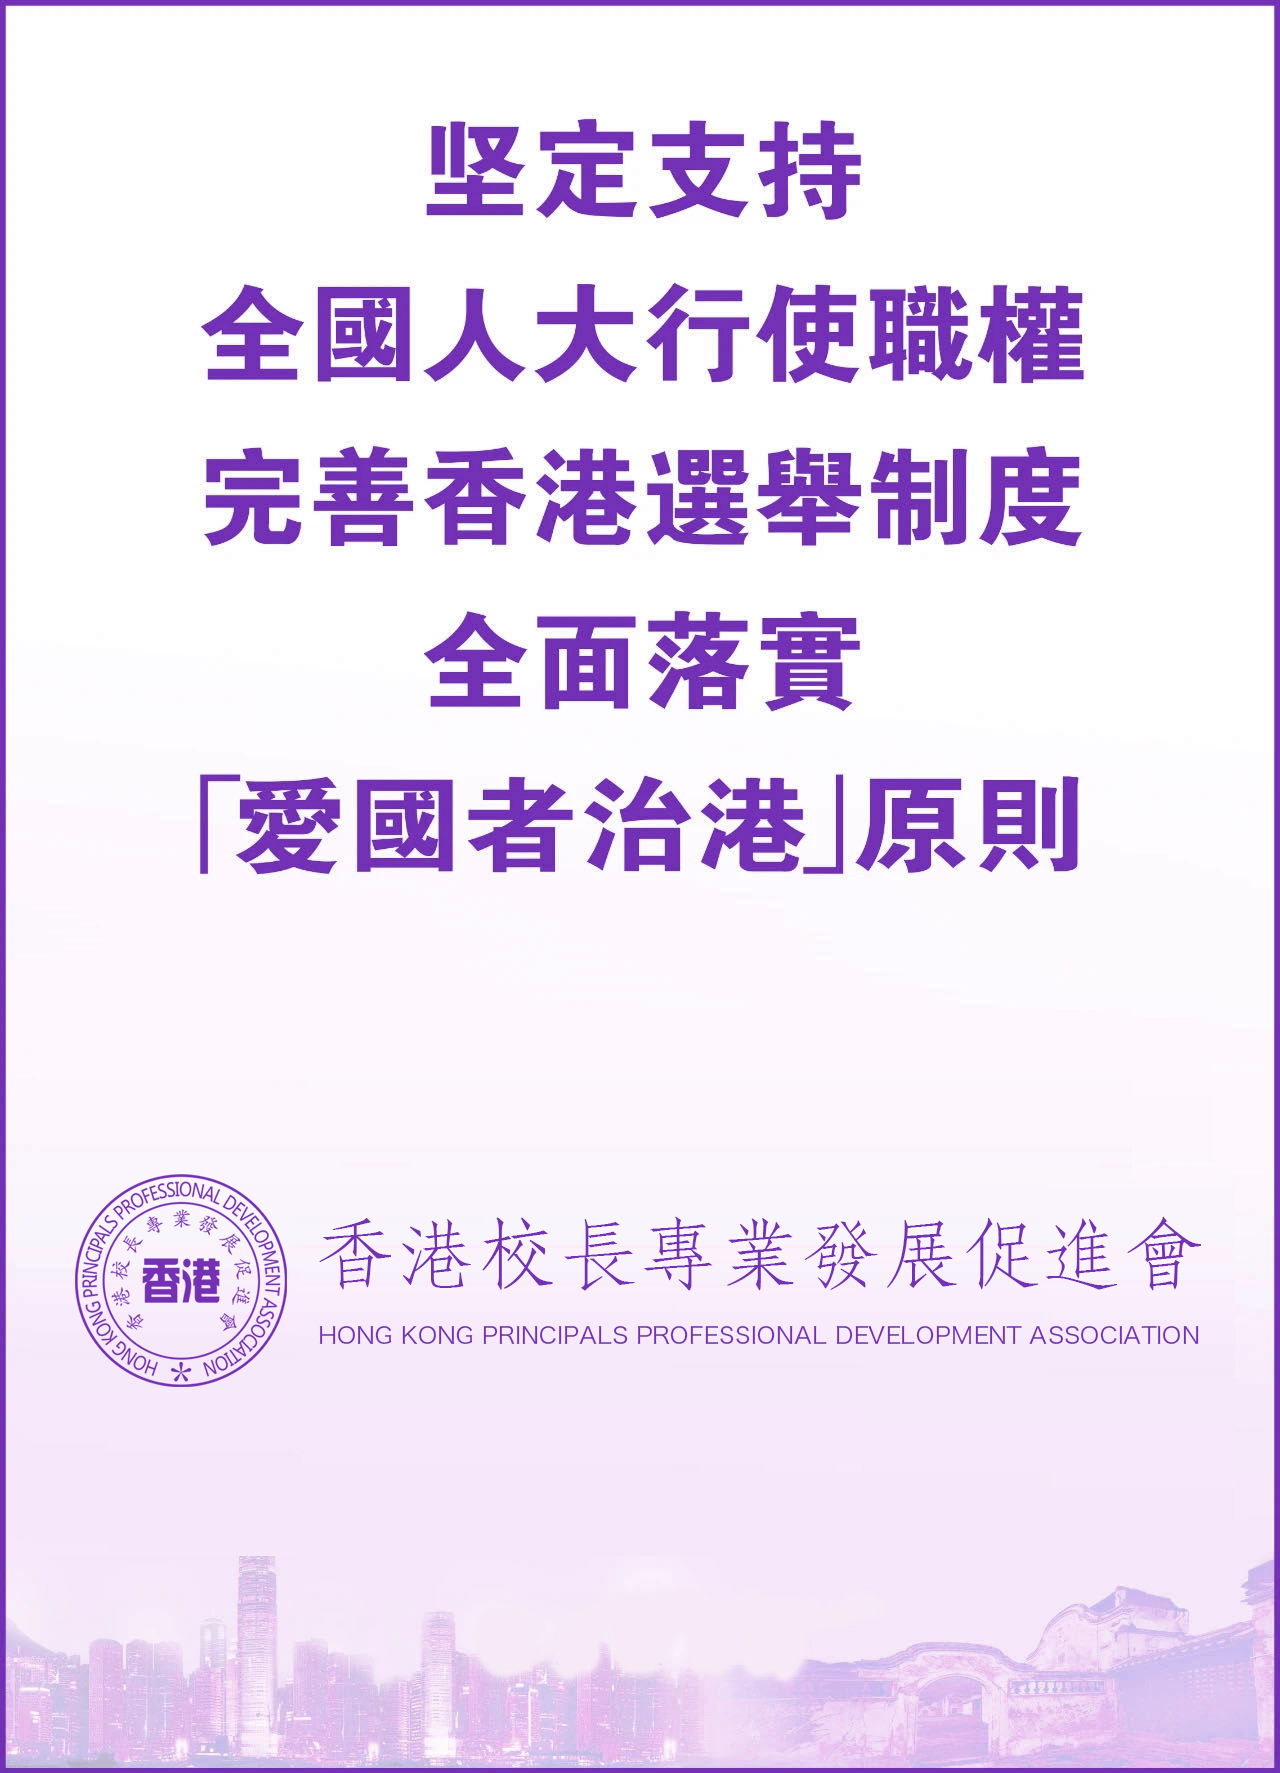 香港校長專業發展促進會堅定支持全國人大行使職權，完善香港選舉制度